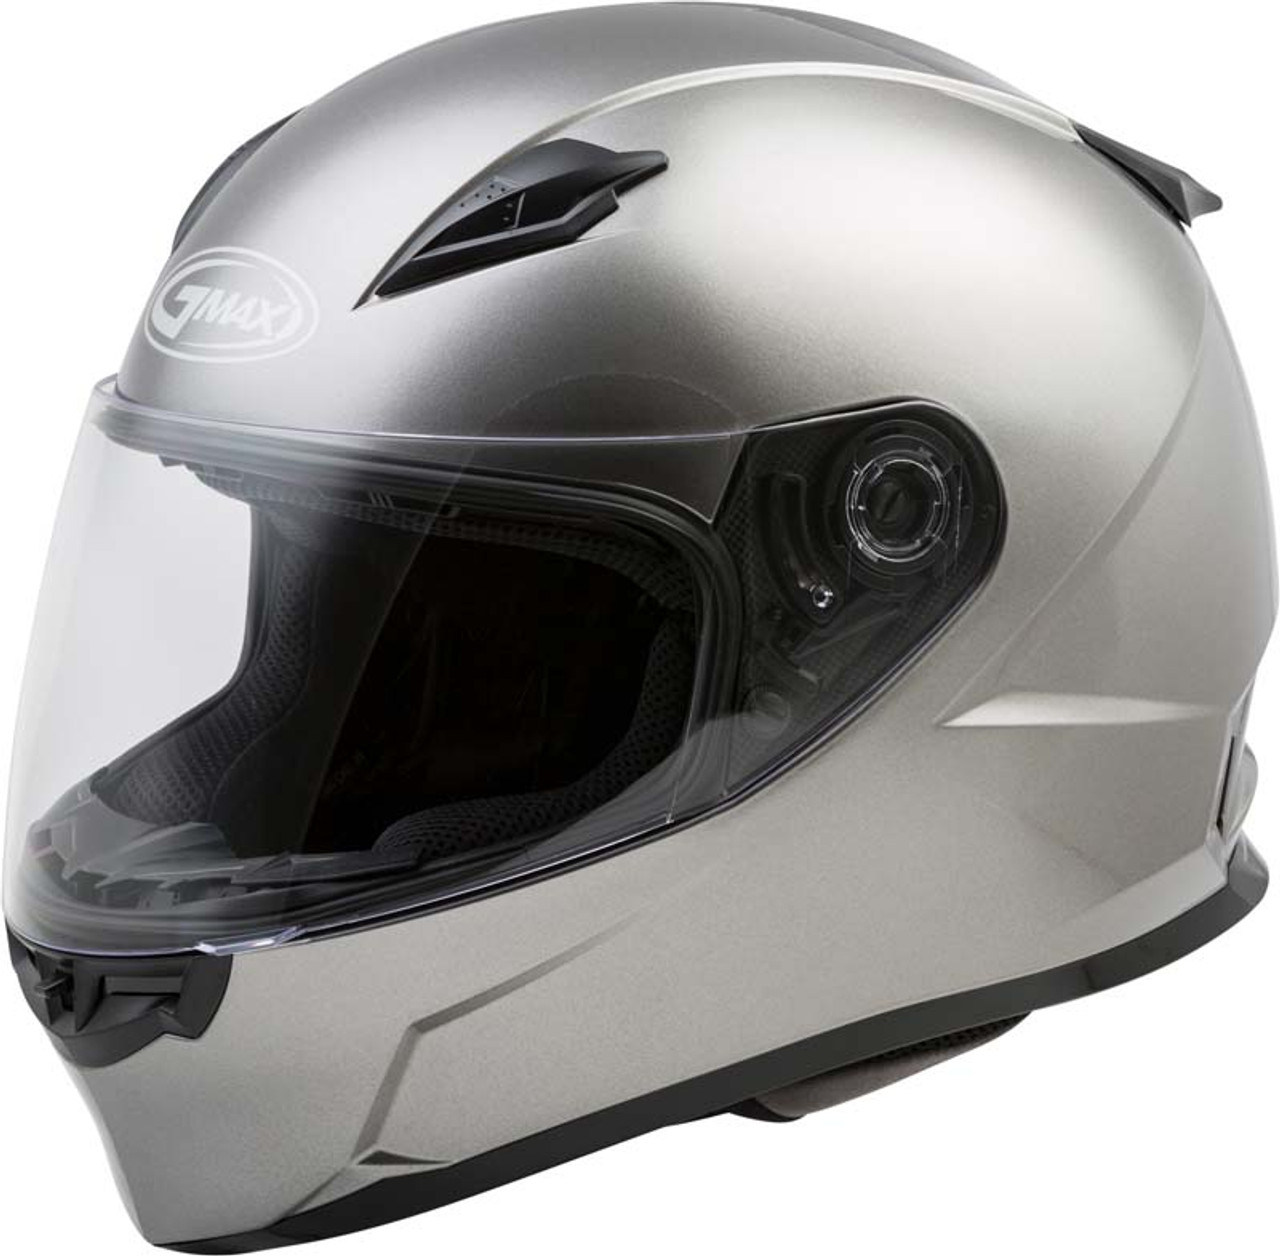 Gmax FF-49 Helmet | XtremeHelmets.com